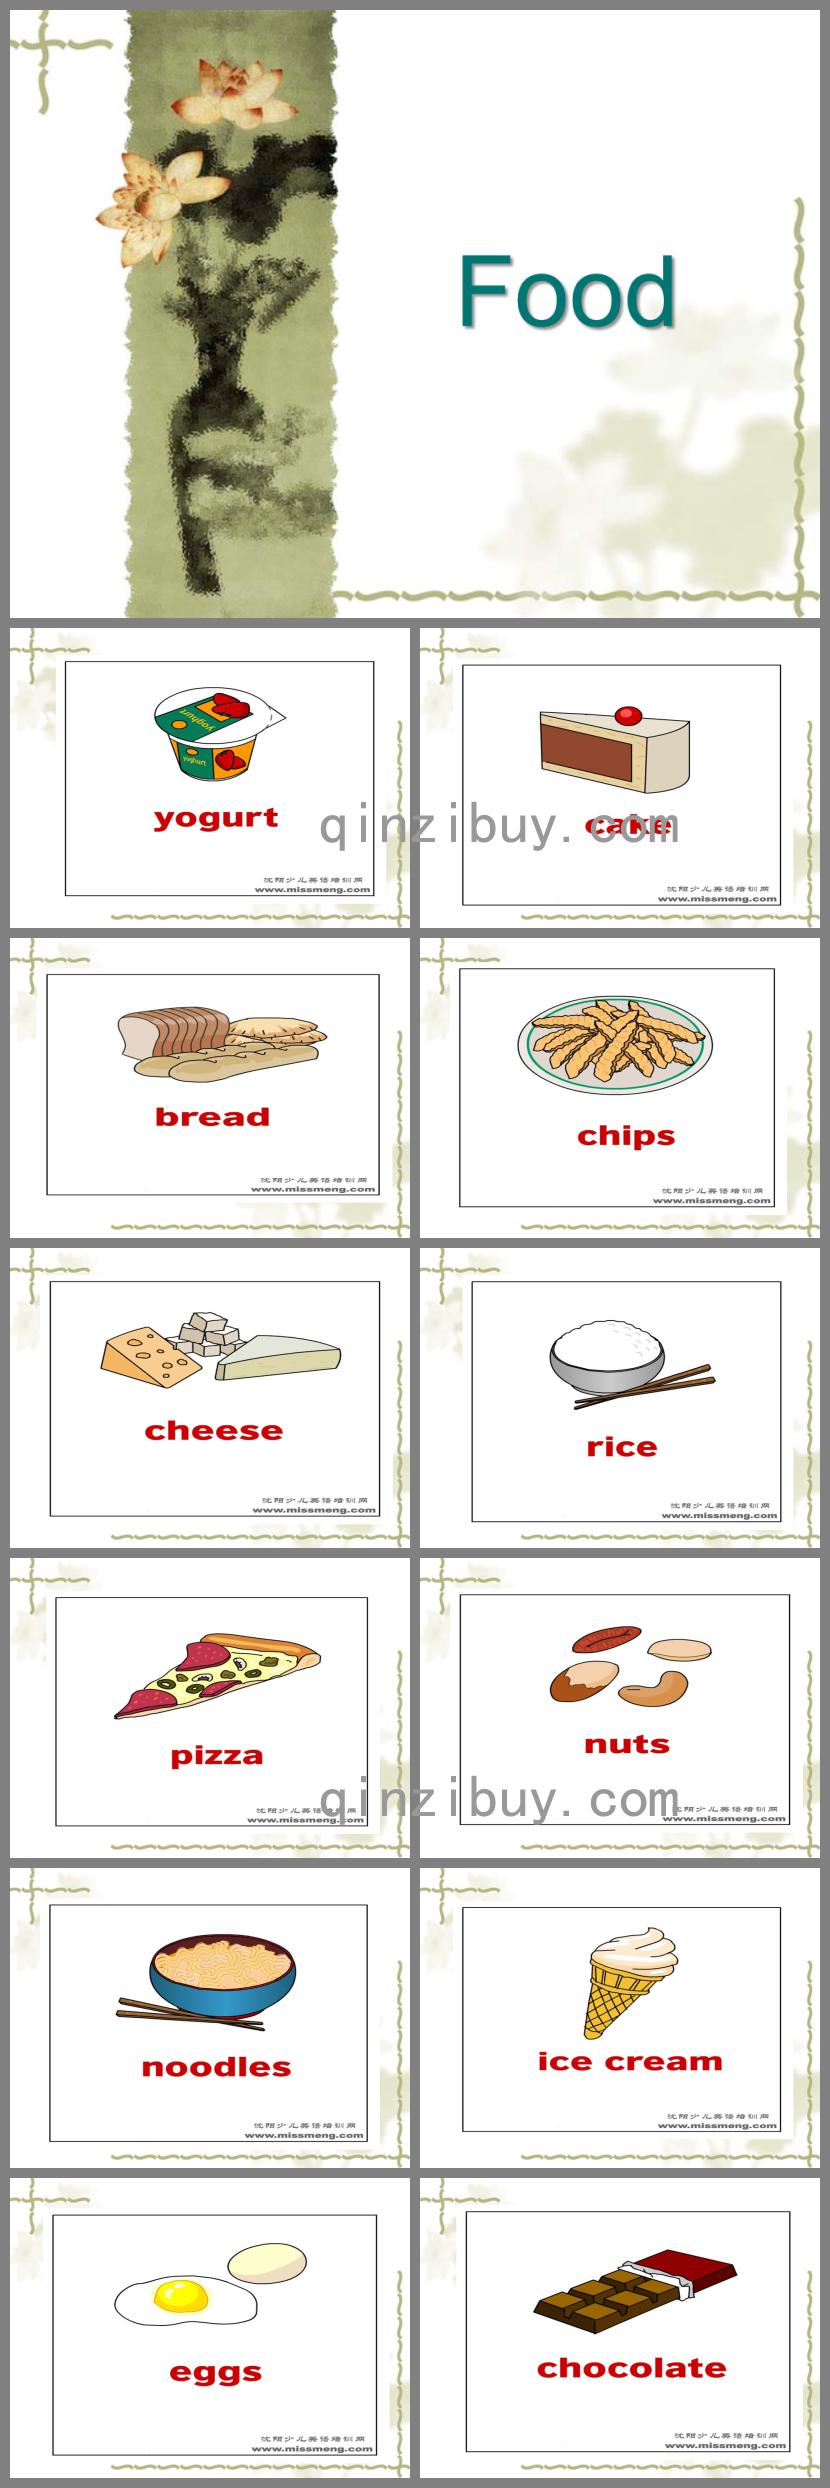 幼儿园英语教学分类图库food食物PPT课件